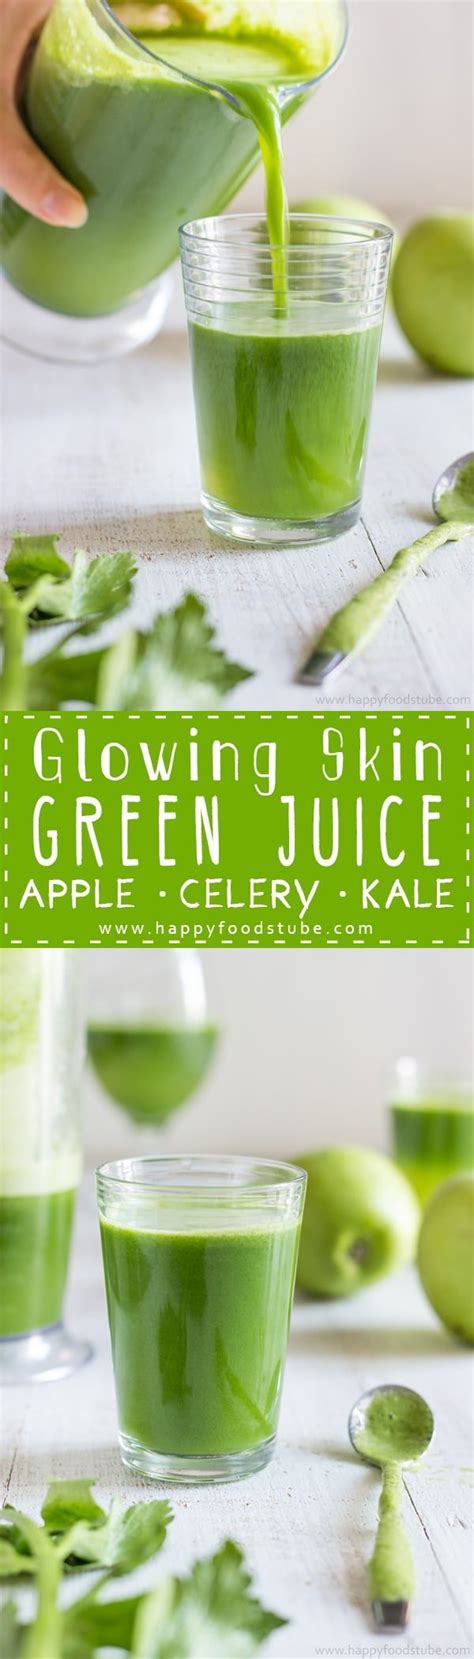 Celery pear healthy green juice. Glowing Skin Green Juice | Recipe | Green juice recipes ...